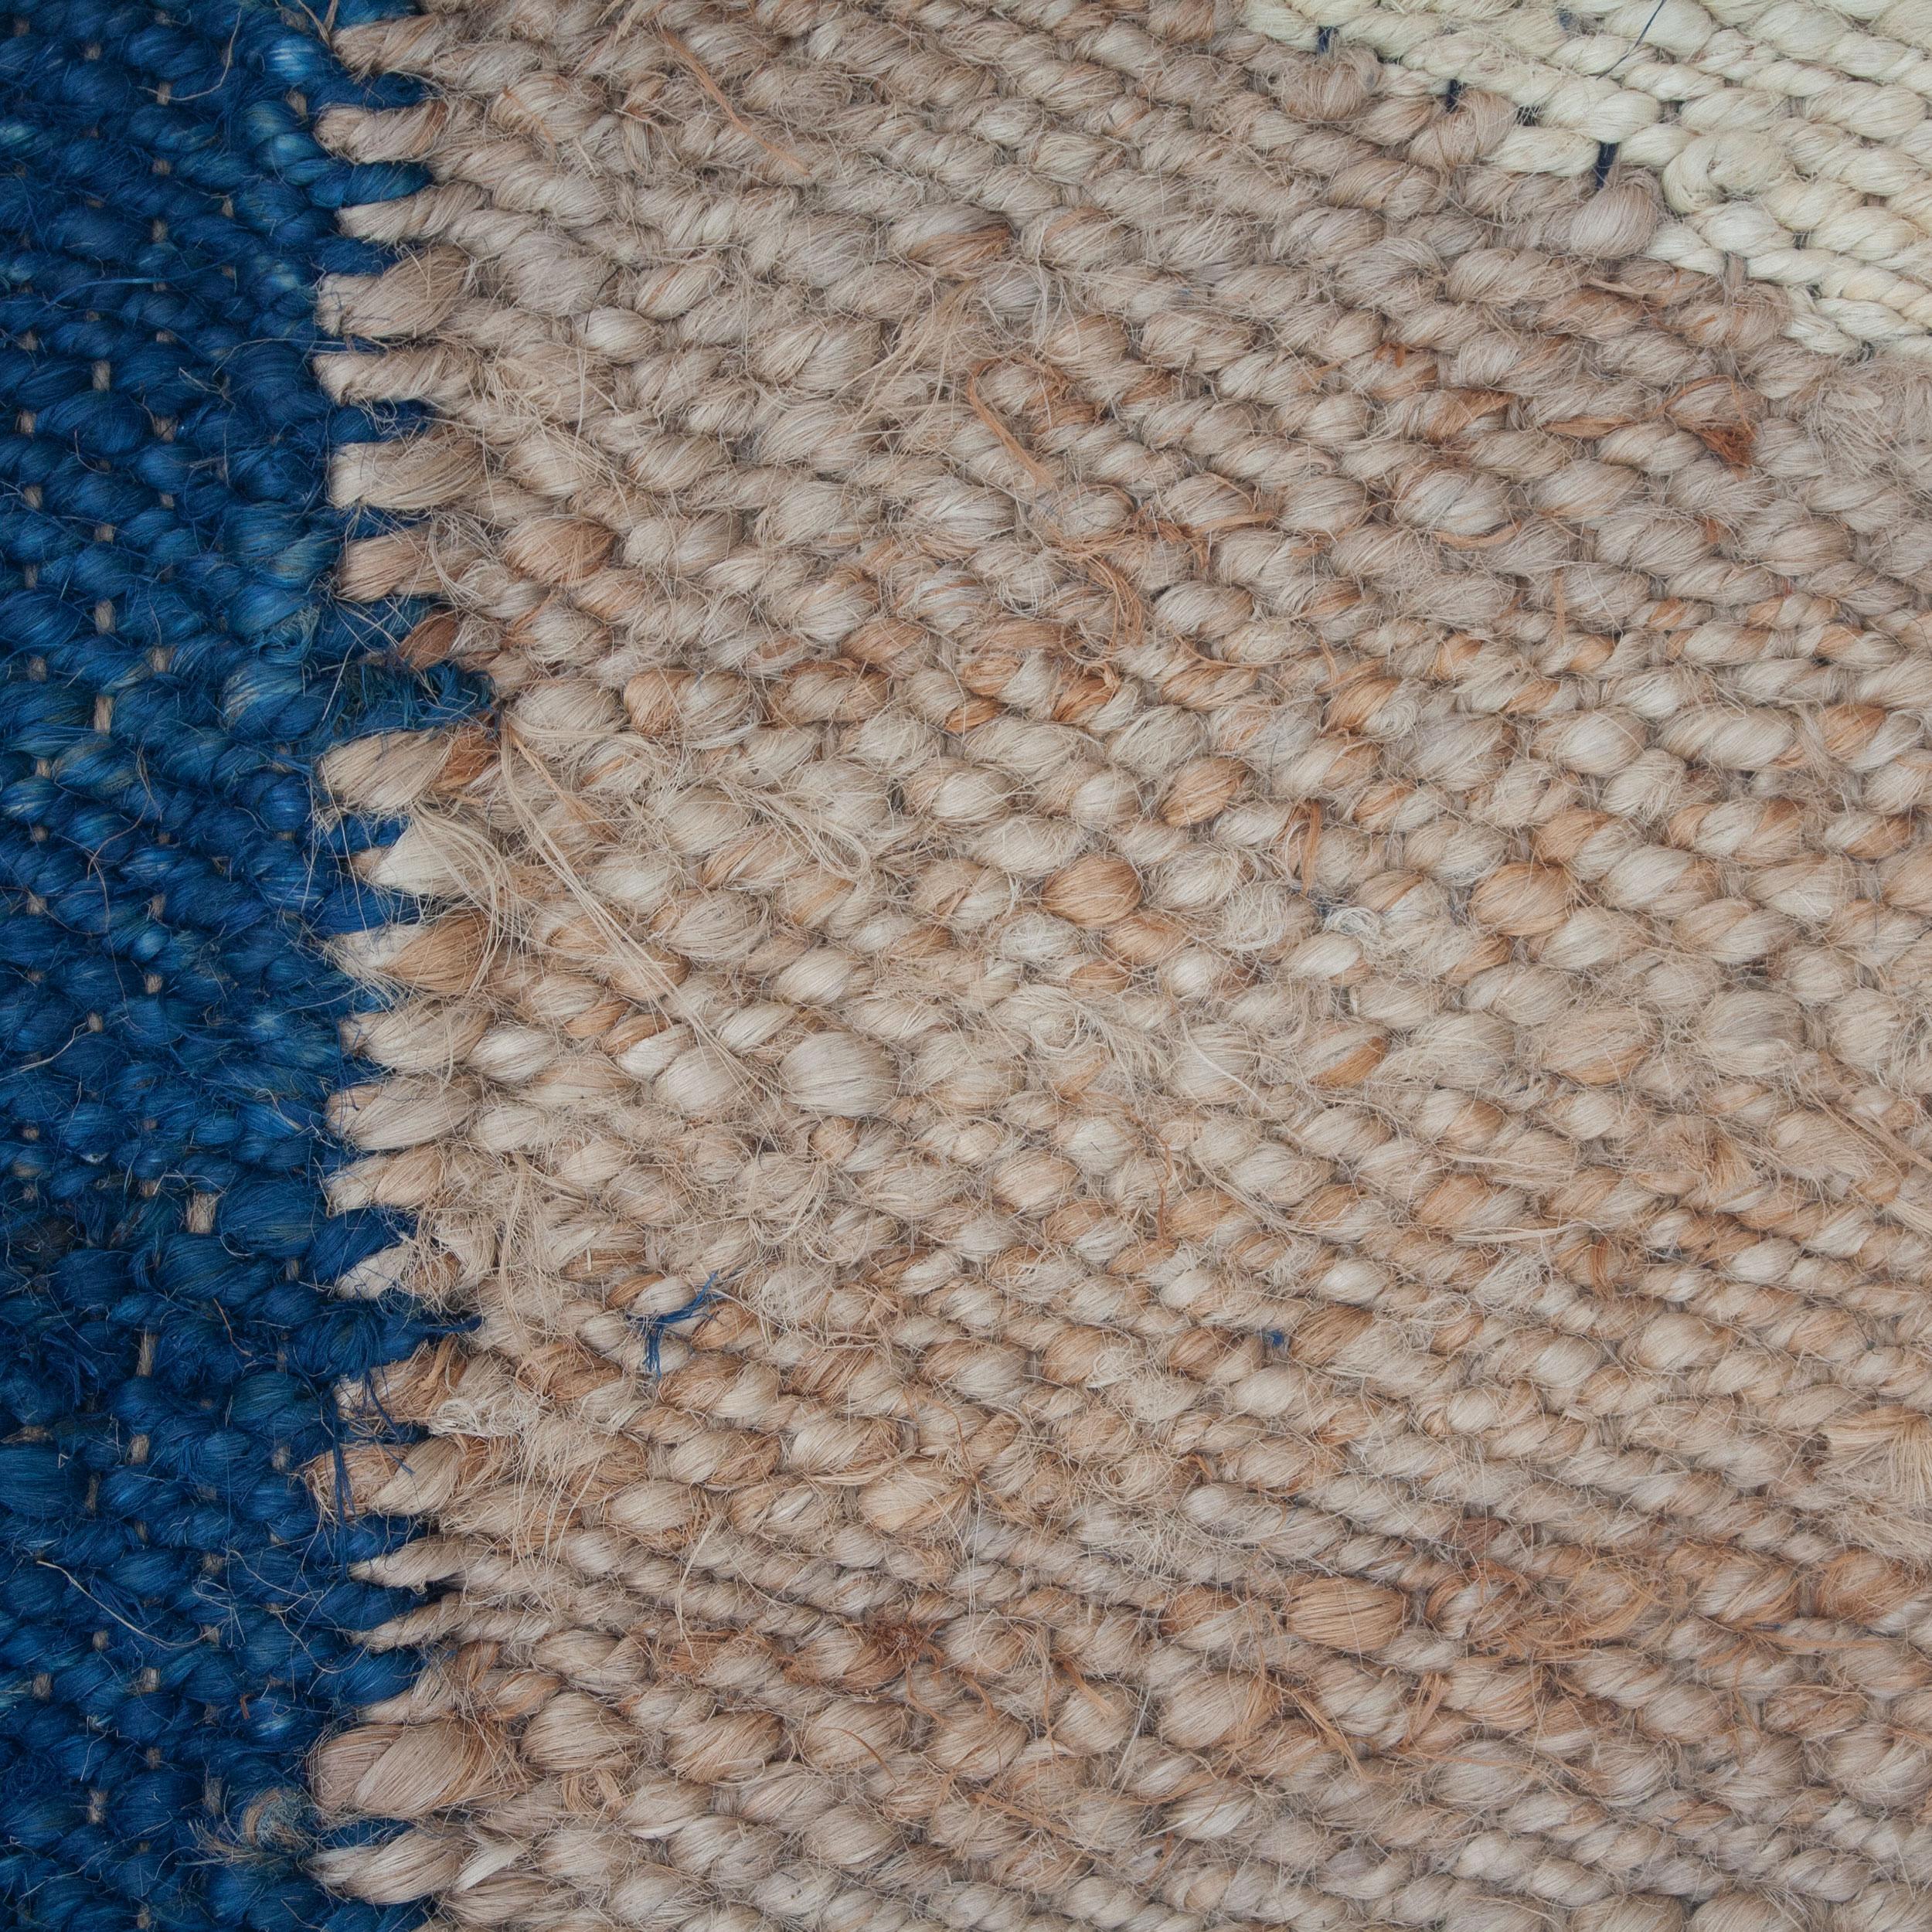 Dieser Juteteppich wurde von Kunsthandwerkern in Rajasthan, Indien, nach ethischen Gesichtspunkten mit feinsten Jutegarnen in einer traditionellen Webtechnik gewebt, die in dieser Region heimisch ist.

Der Kauf dieses handgefertigten Teppichs hilft,